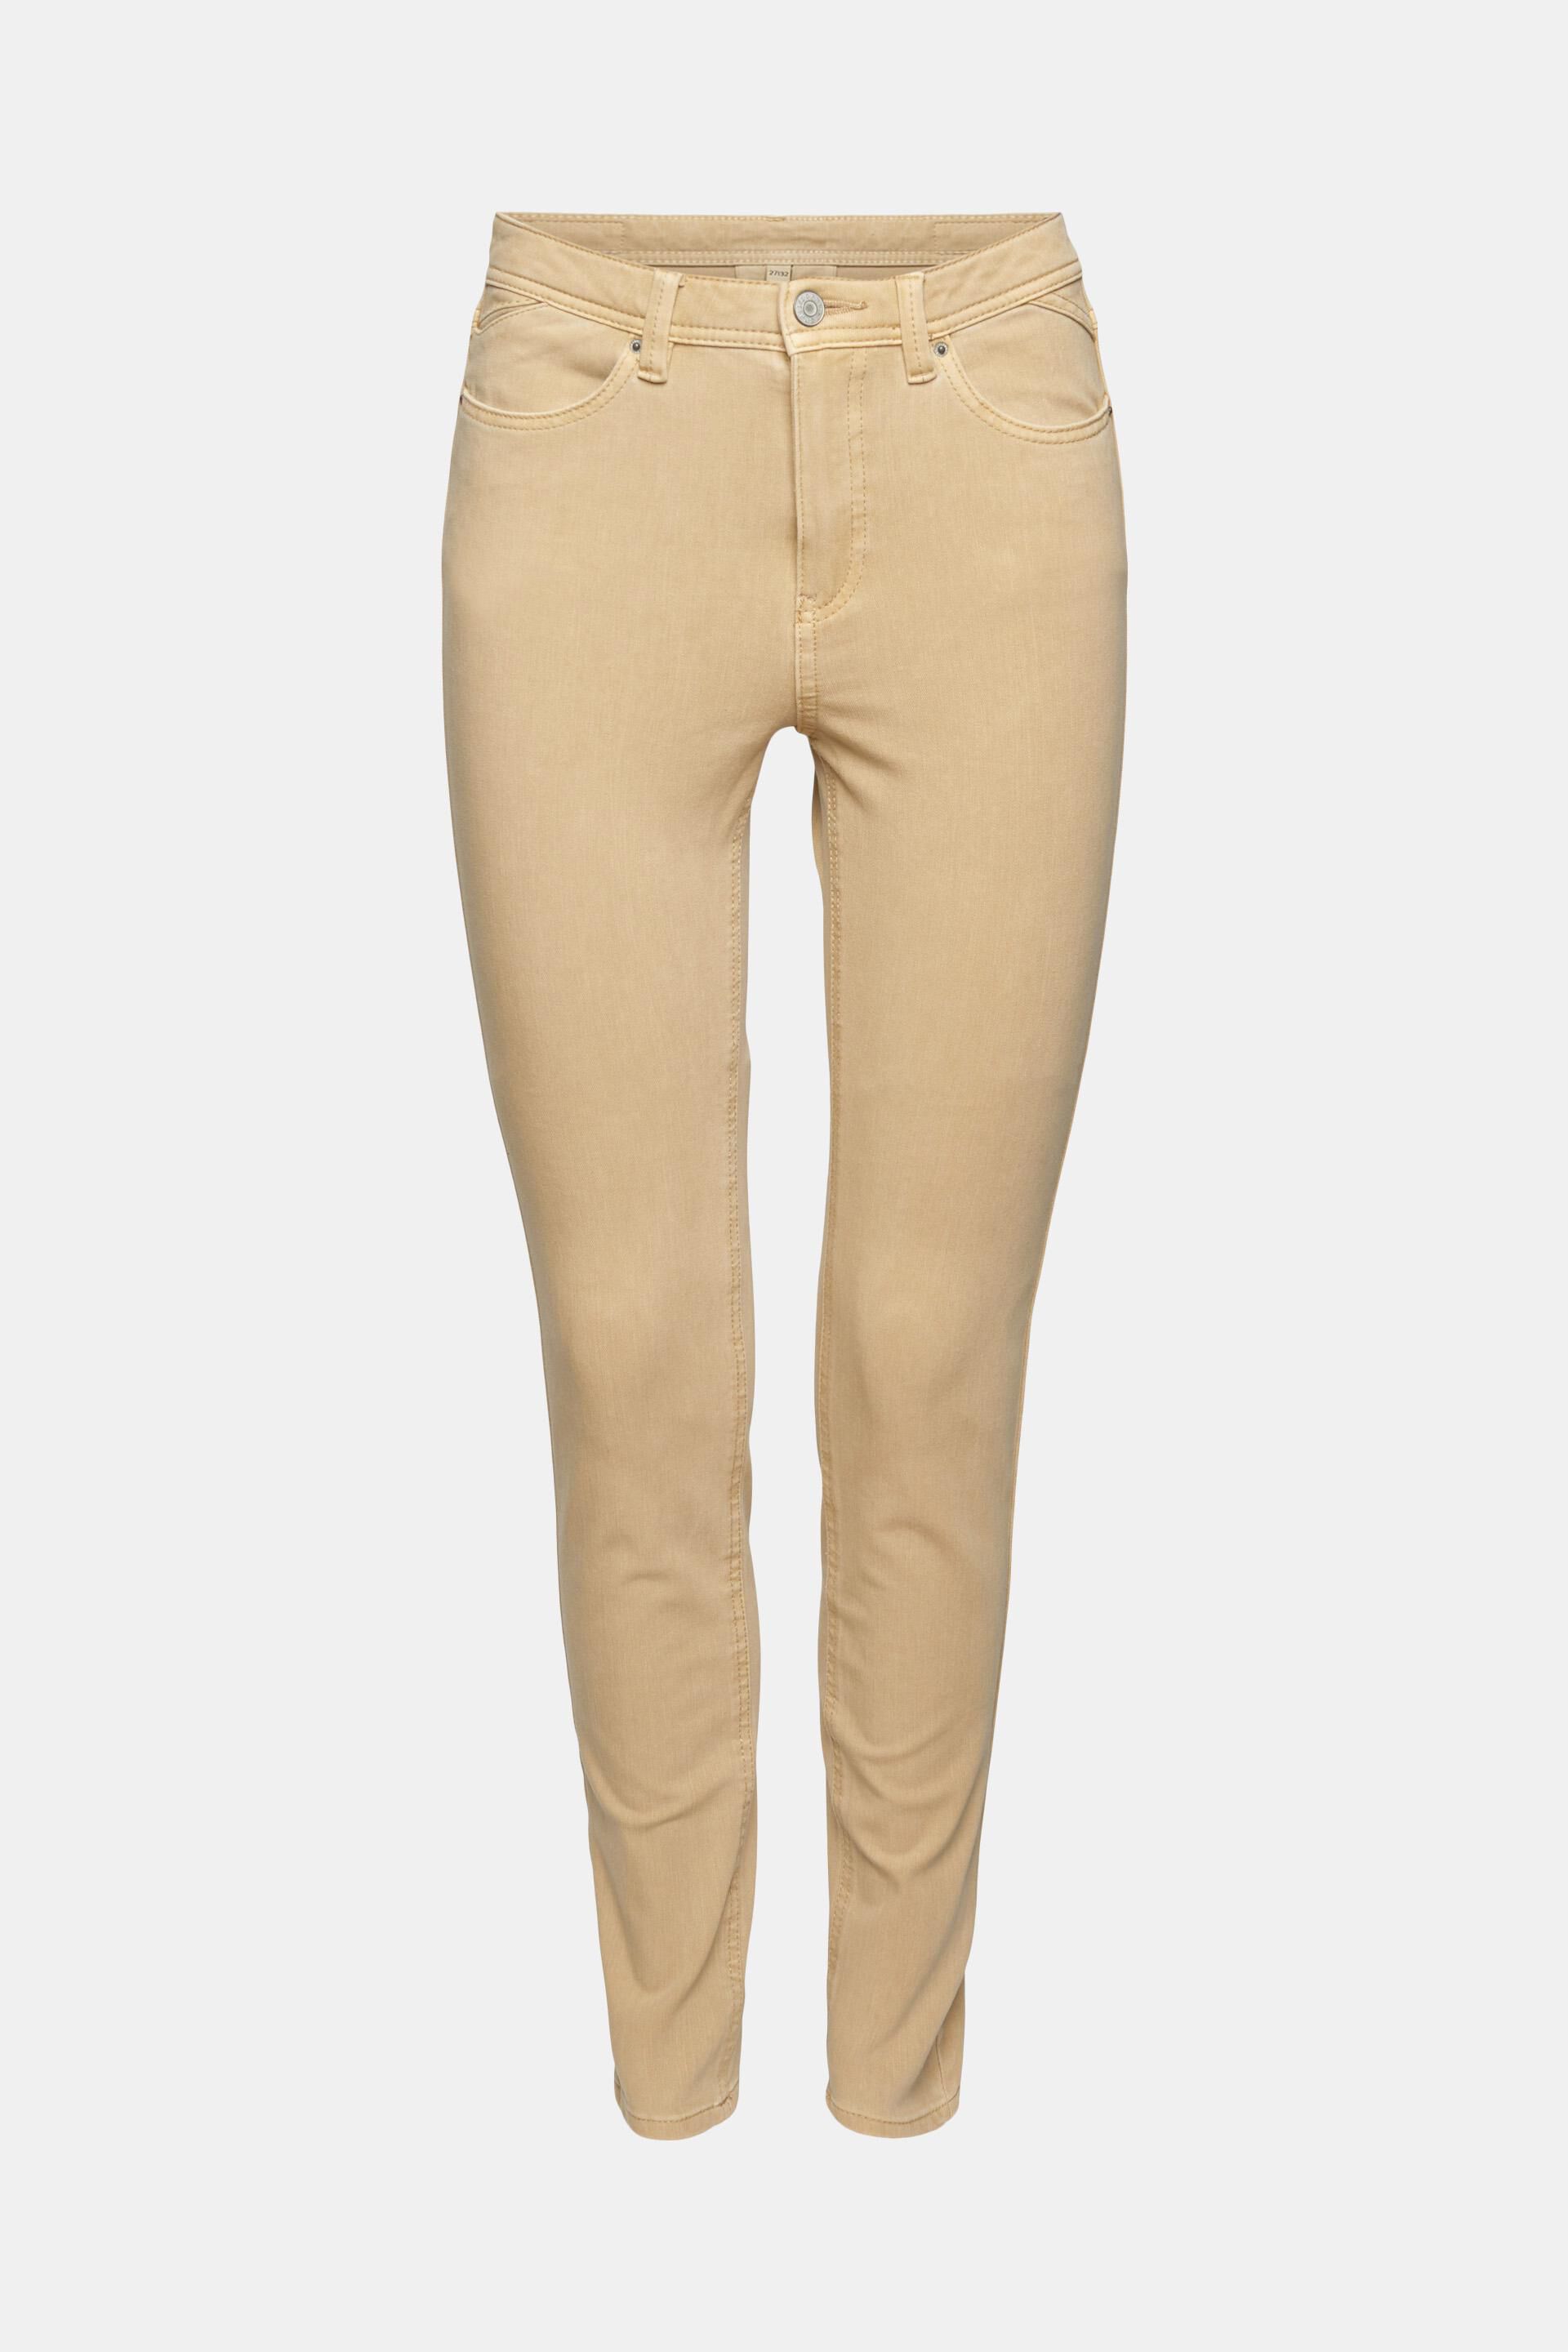 Hollister Hot pants khaki gestreept patroon casual uitstraling Mode Korte broeken Hot pants 